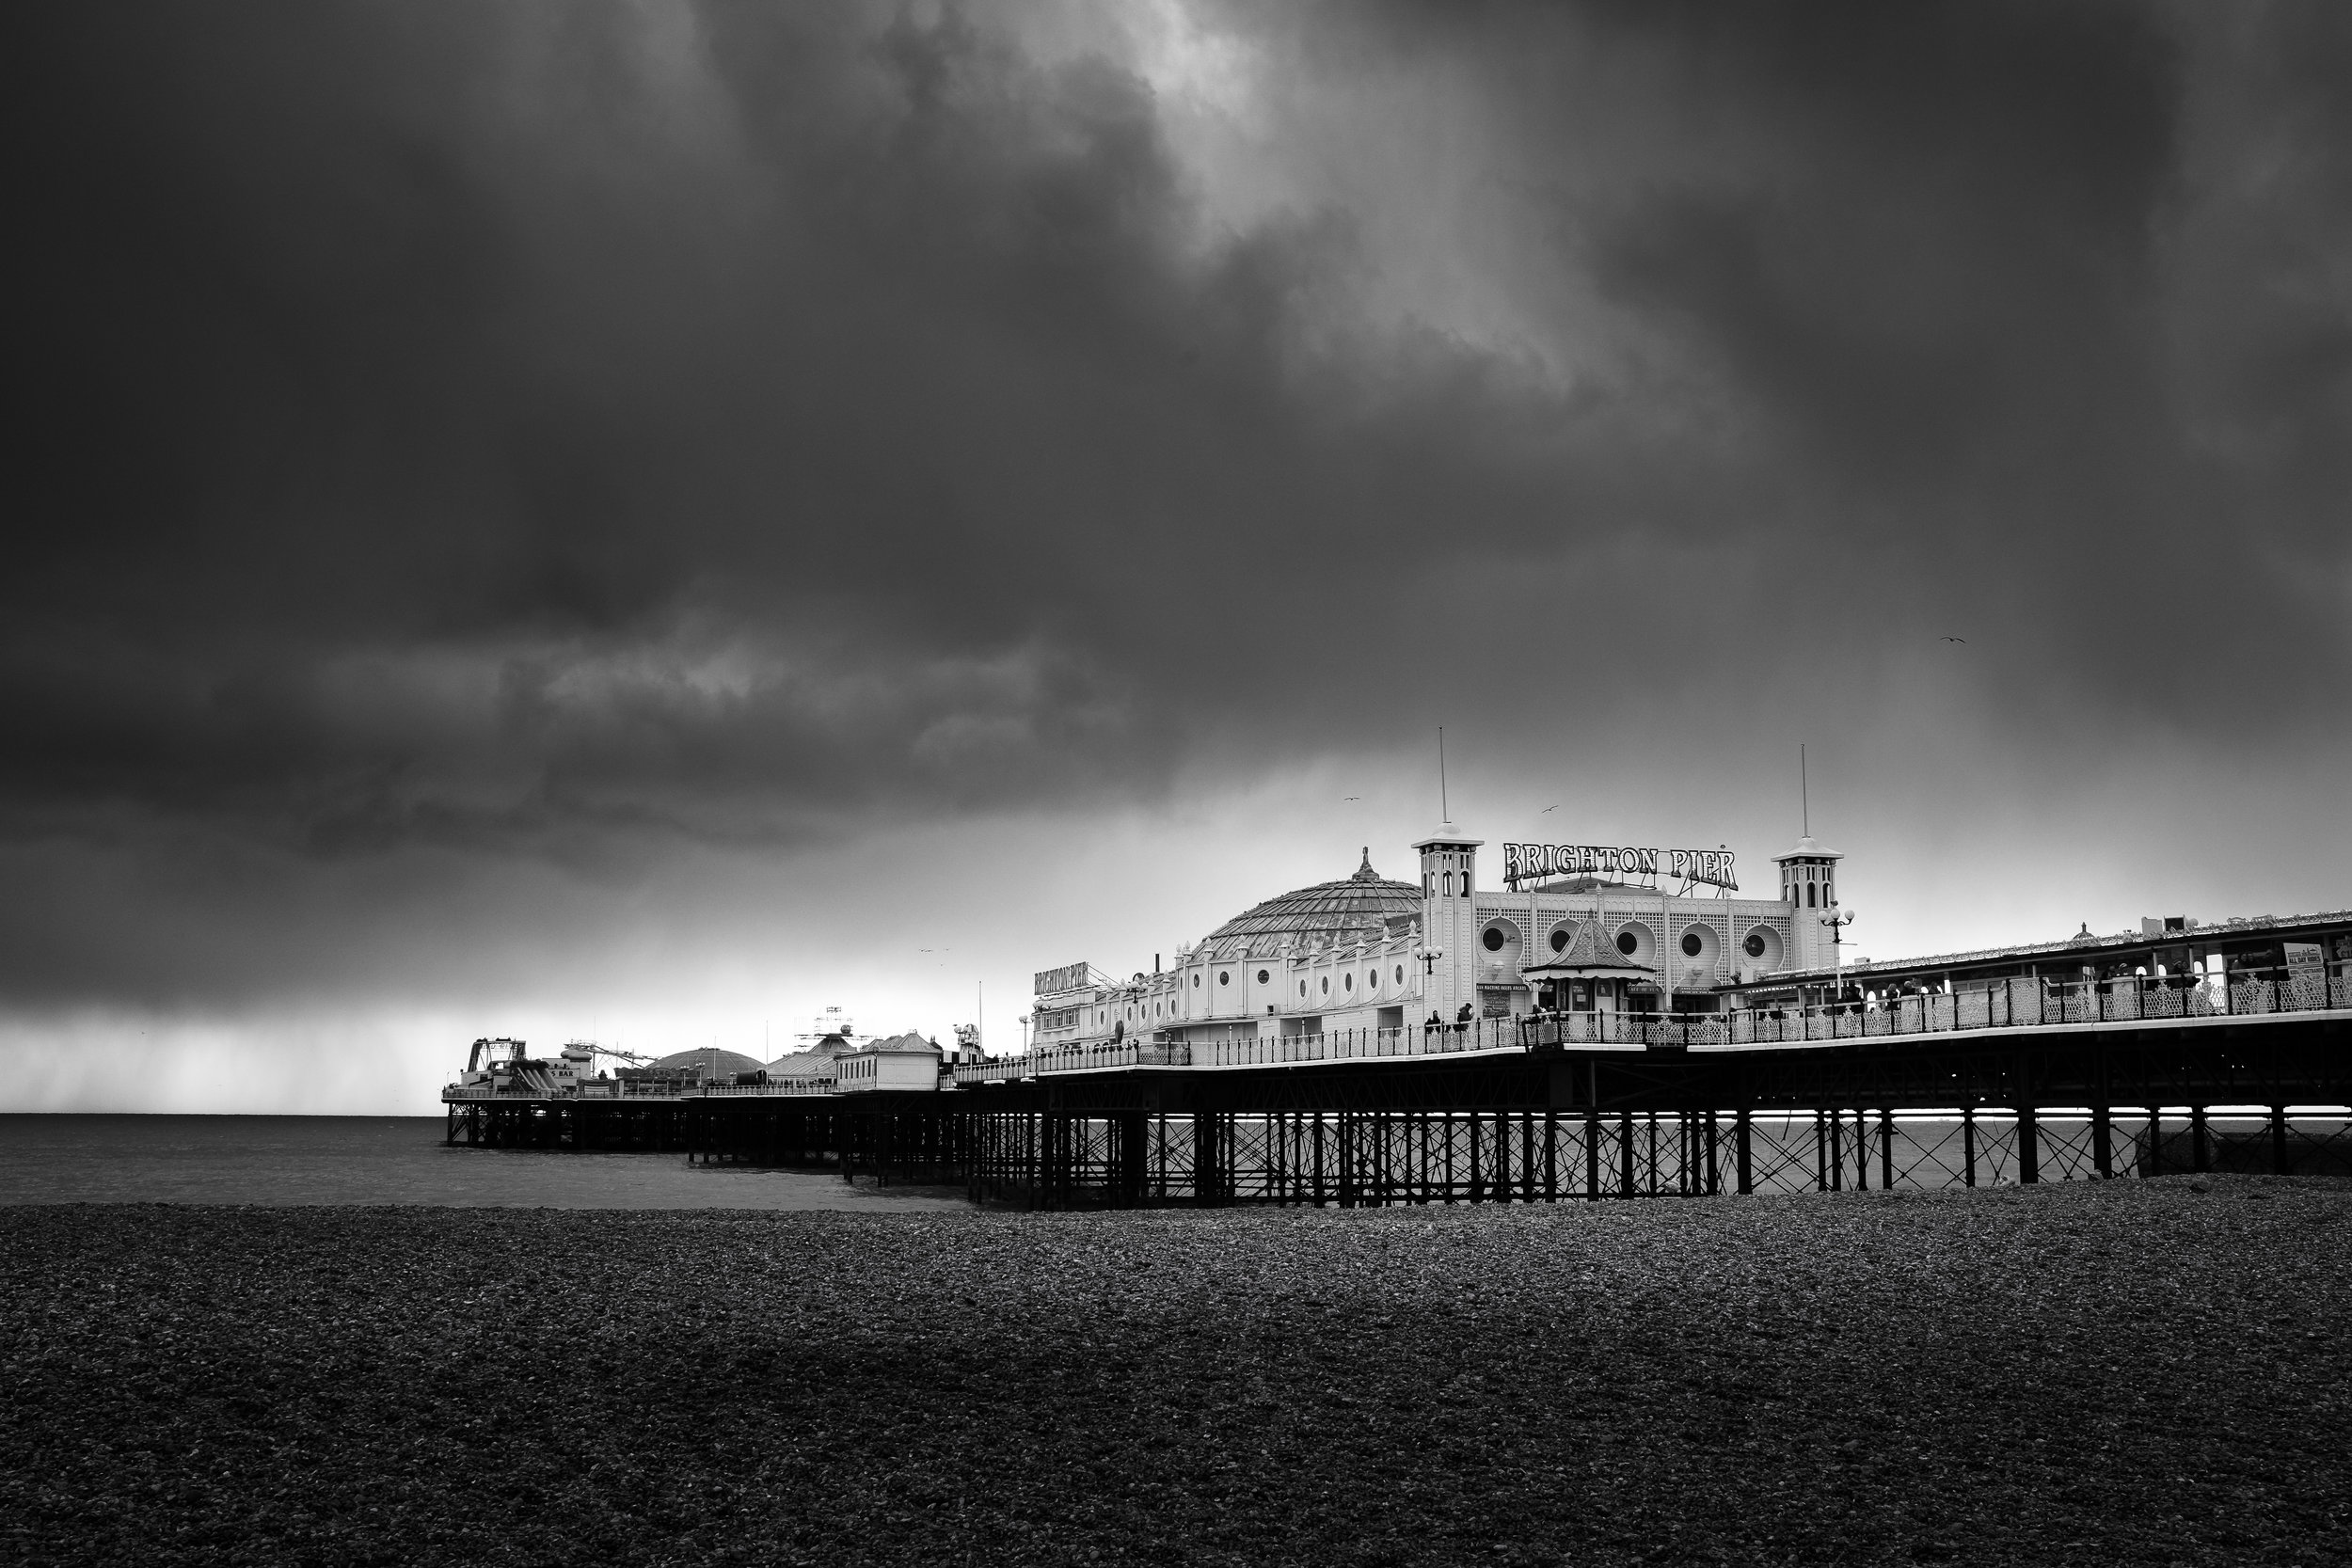  Brighton Palace Pier. Brighton, England 